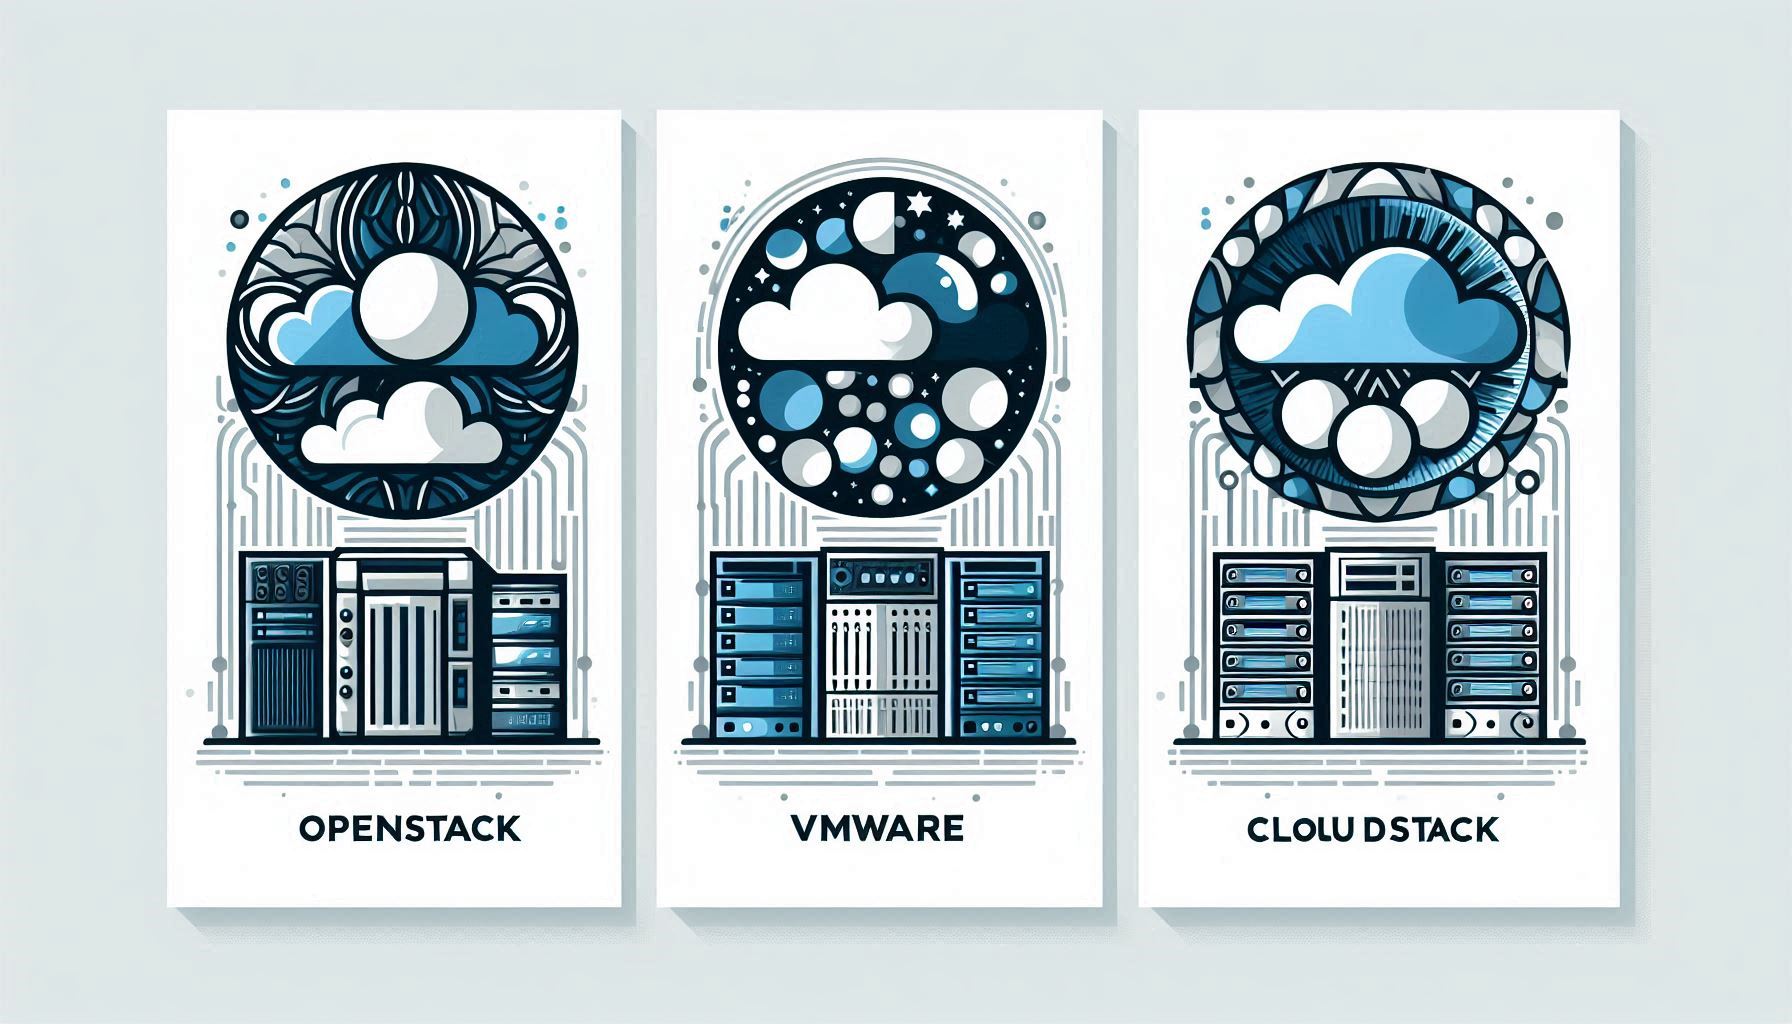 openstack-vs-vmware-vs-cloudStack